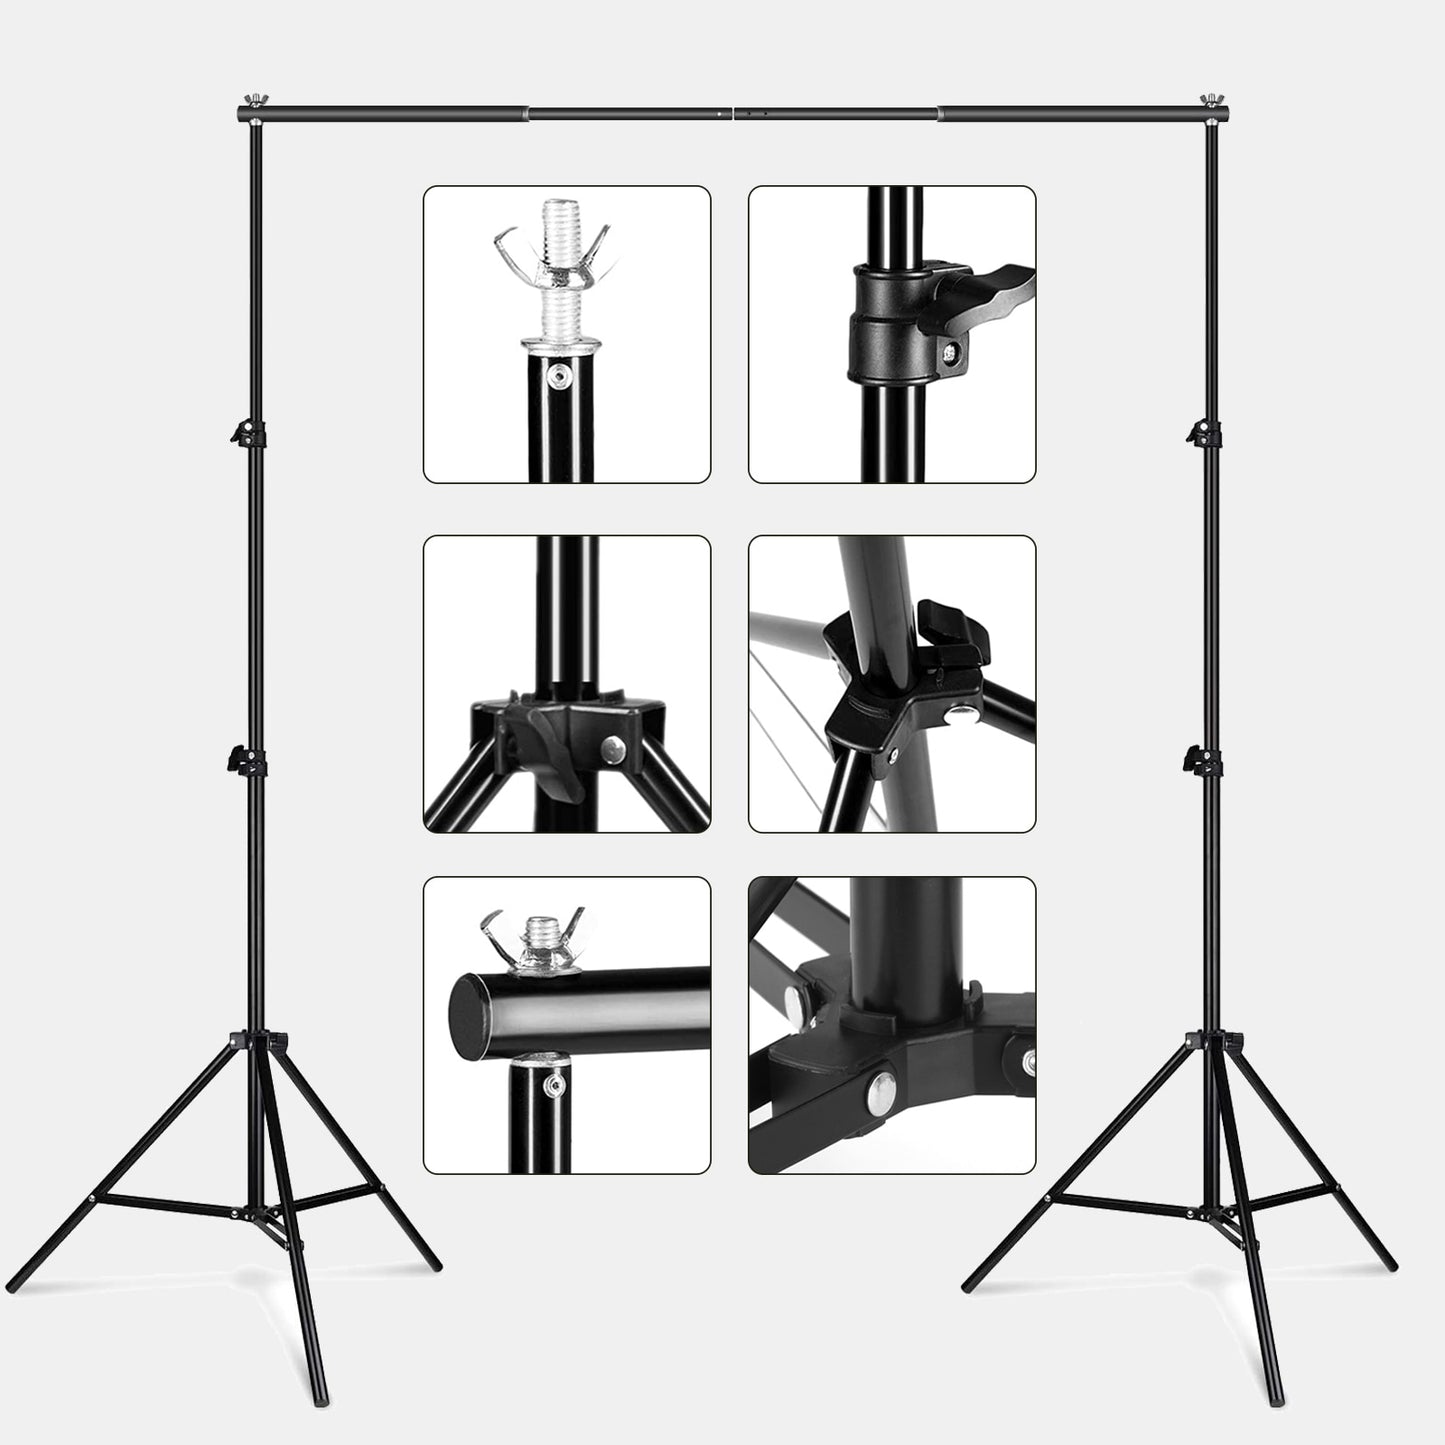 Photography Studio Backdrop Stand Photo Video Studio Background Stand Backdrop Support System Kit Scenery Shelf Frame Light Kit Background Stand DailyAlertDeals   